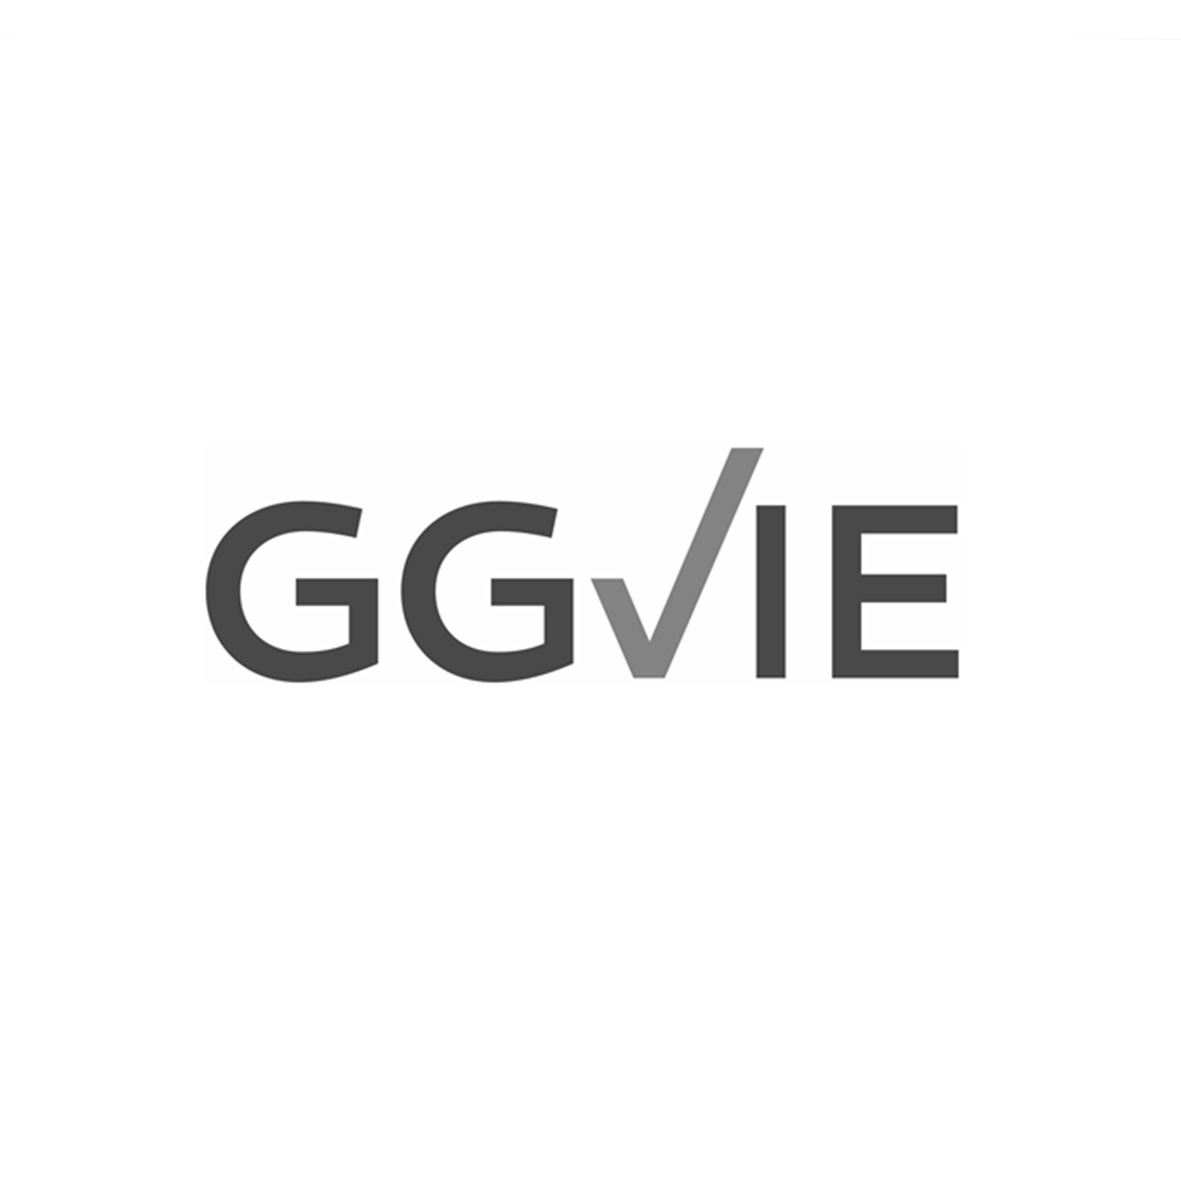 Logo typographique de notre client GGVIE